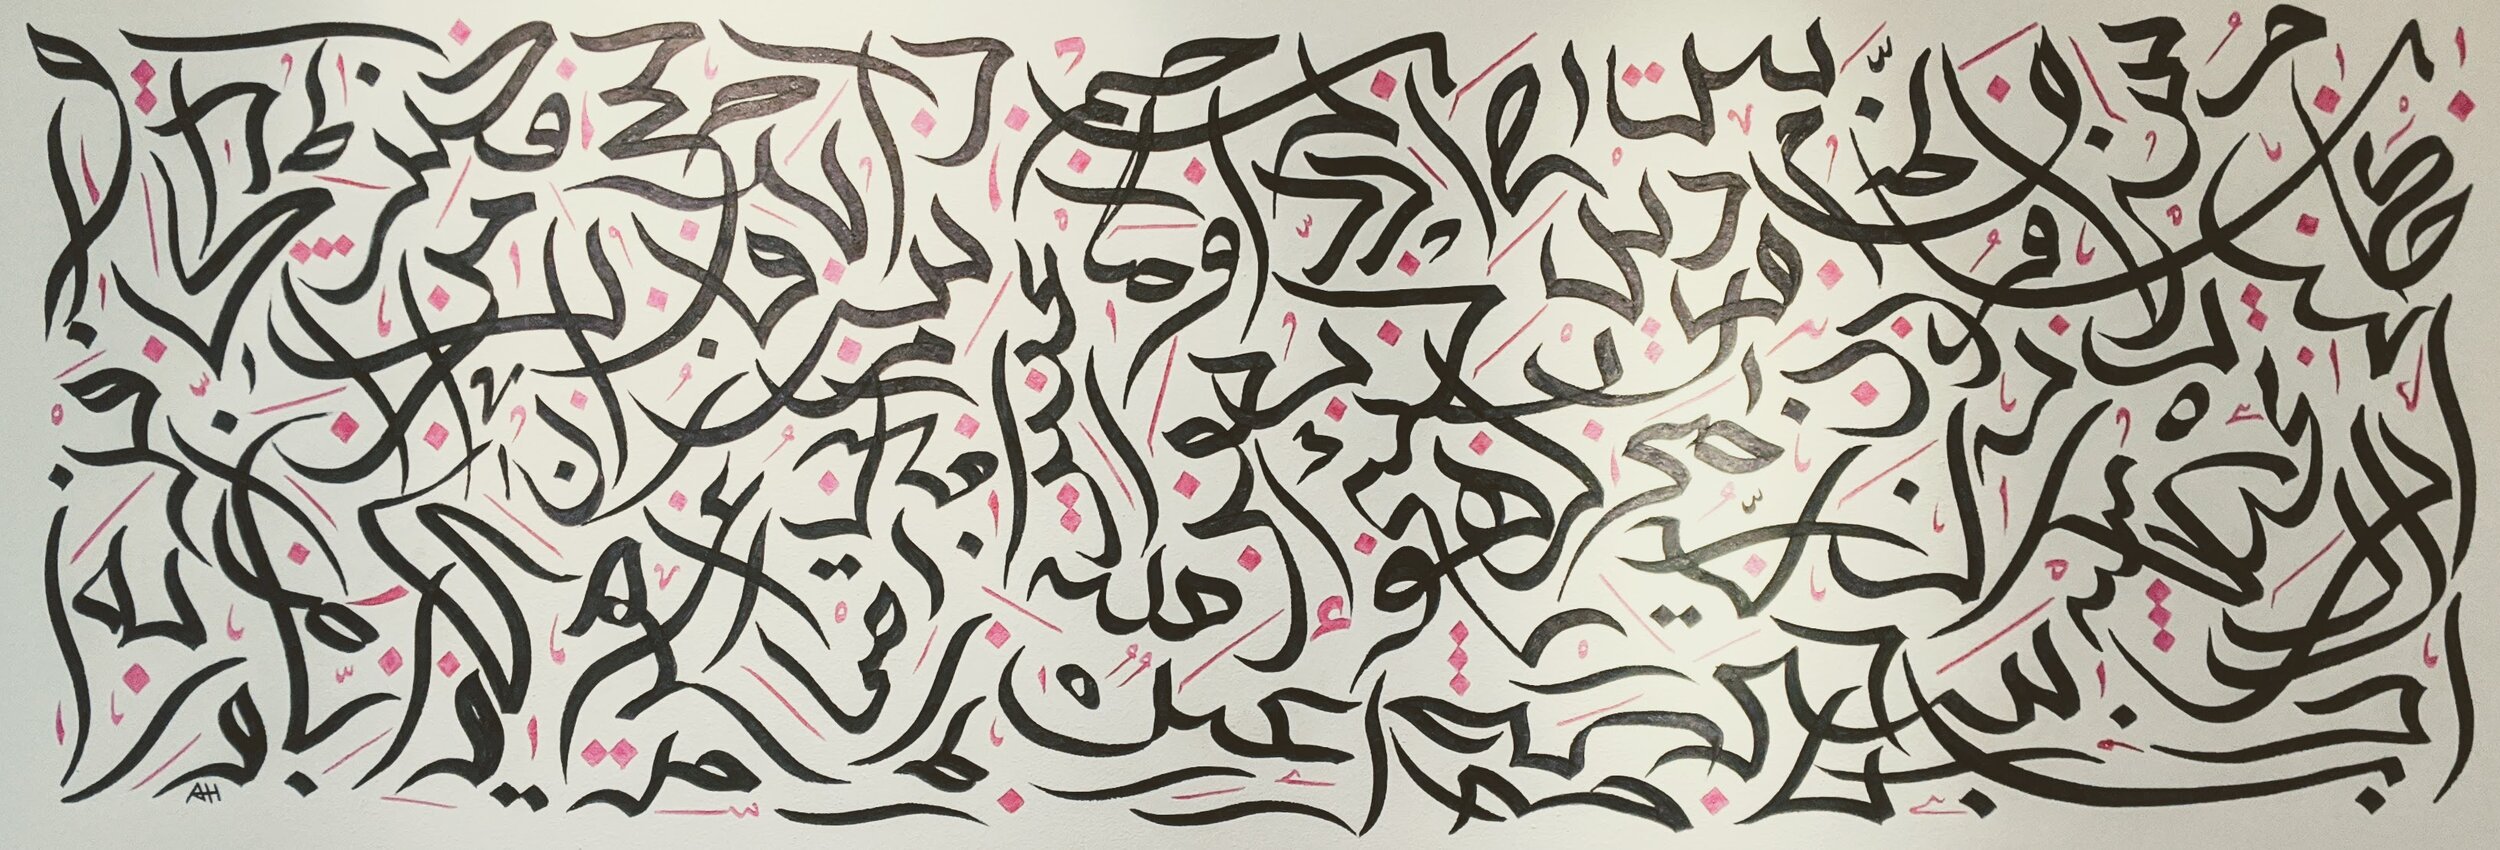 Calligraphy Amjad Hashem 2 2020 CBKZOAmsterdam.JPG